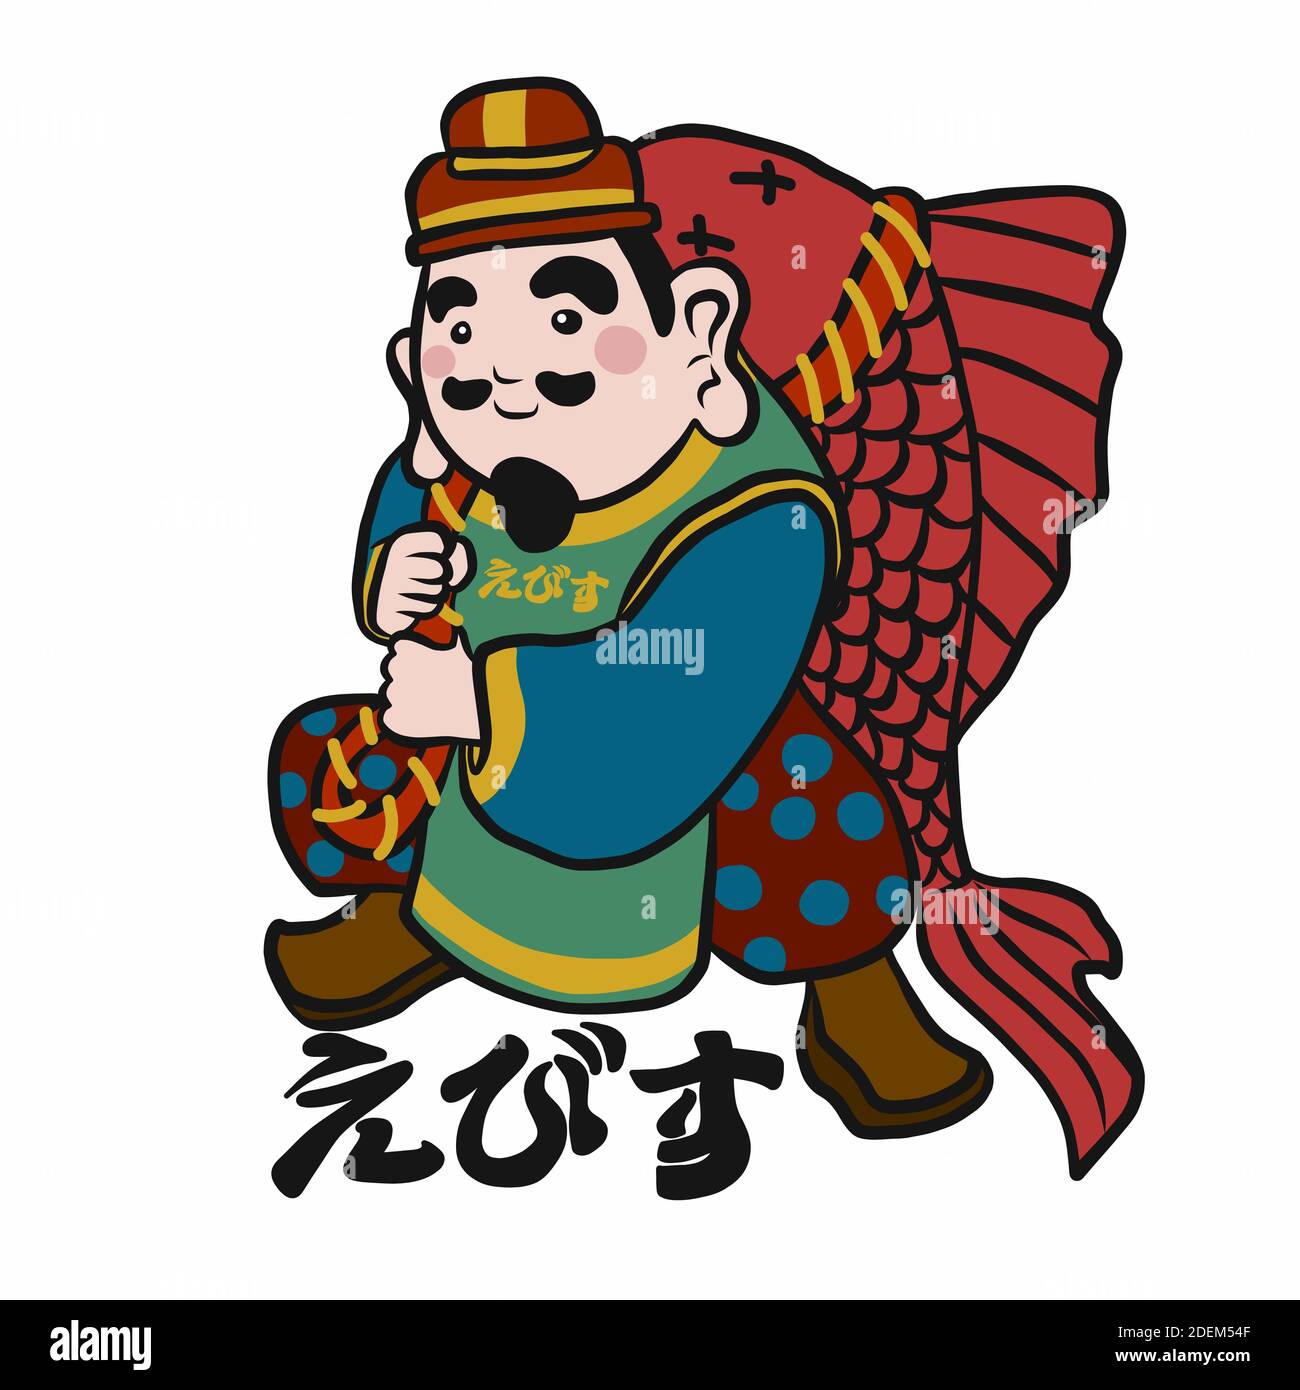 Japanischer Fischer gott mit japanischem Wort bedeuten Ebisu (Gottes Name) Cartoon Vektorgrafik Stock Vektor